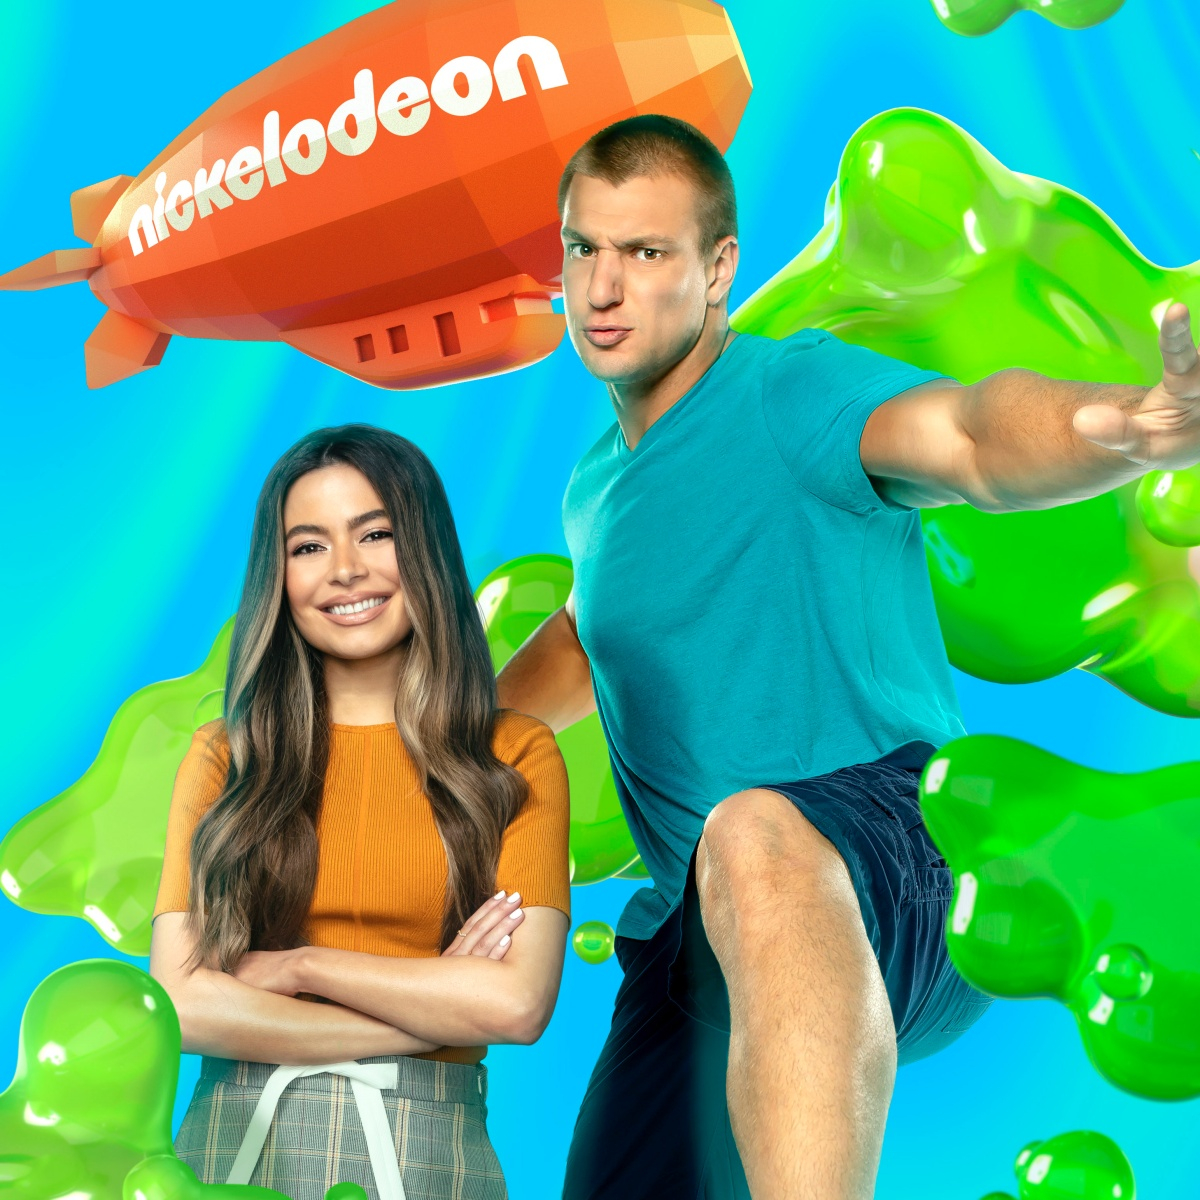 2022 Nickelodeon Kids' Choice Awards winners list: Olivia Rodrigo